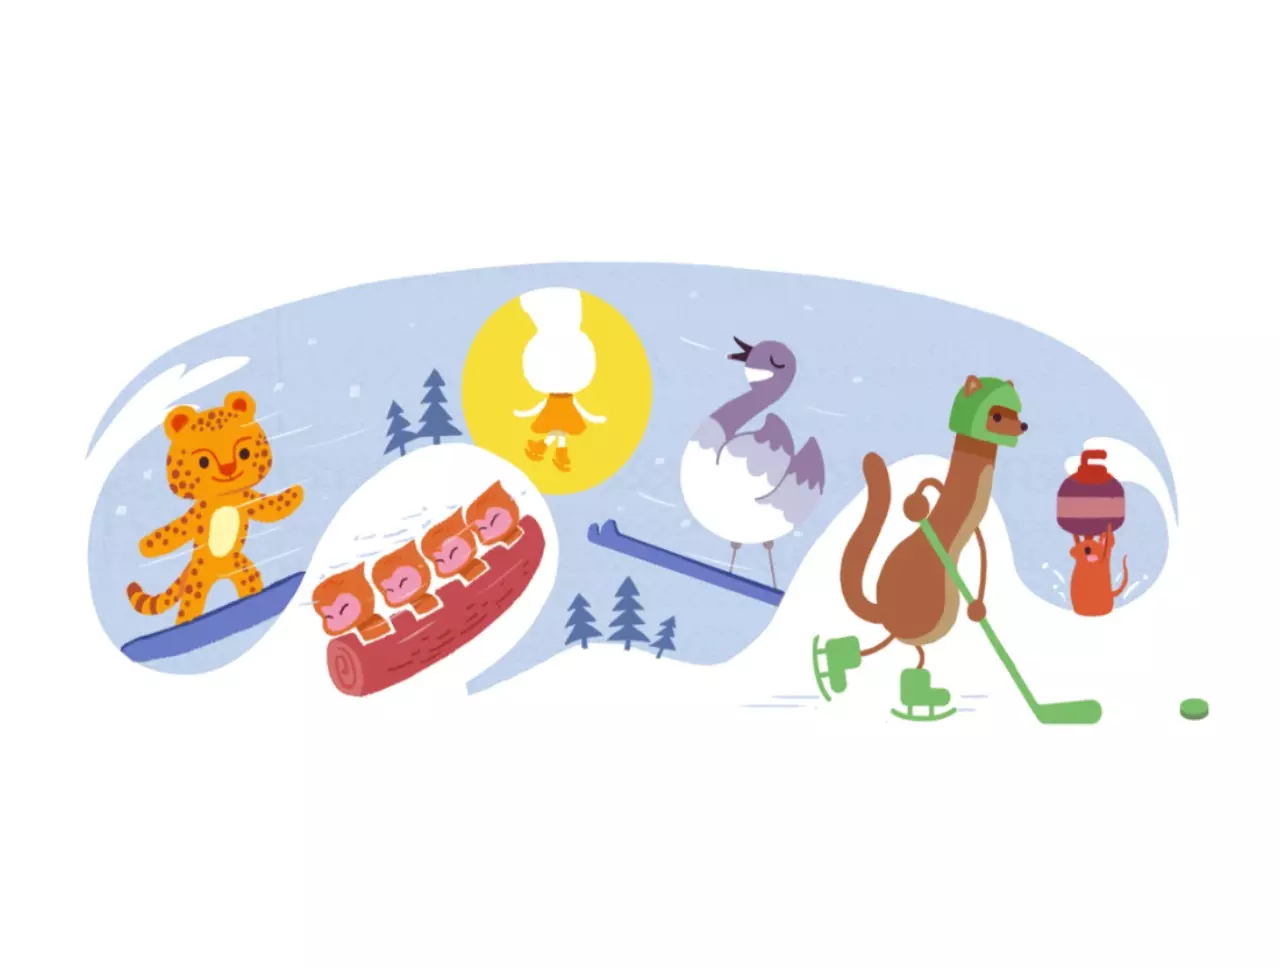 Ξεκινούν σήμερα οι Χειμερινοί Ολυμπιακοί Αγώνες 2022 και η Google το «γιορτάζει» με ένα doodle